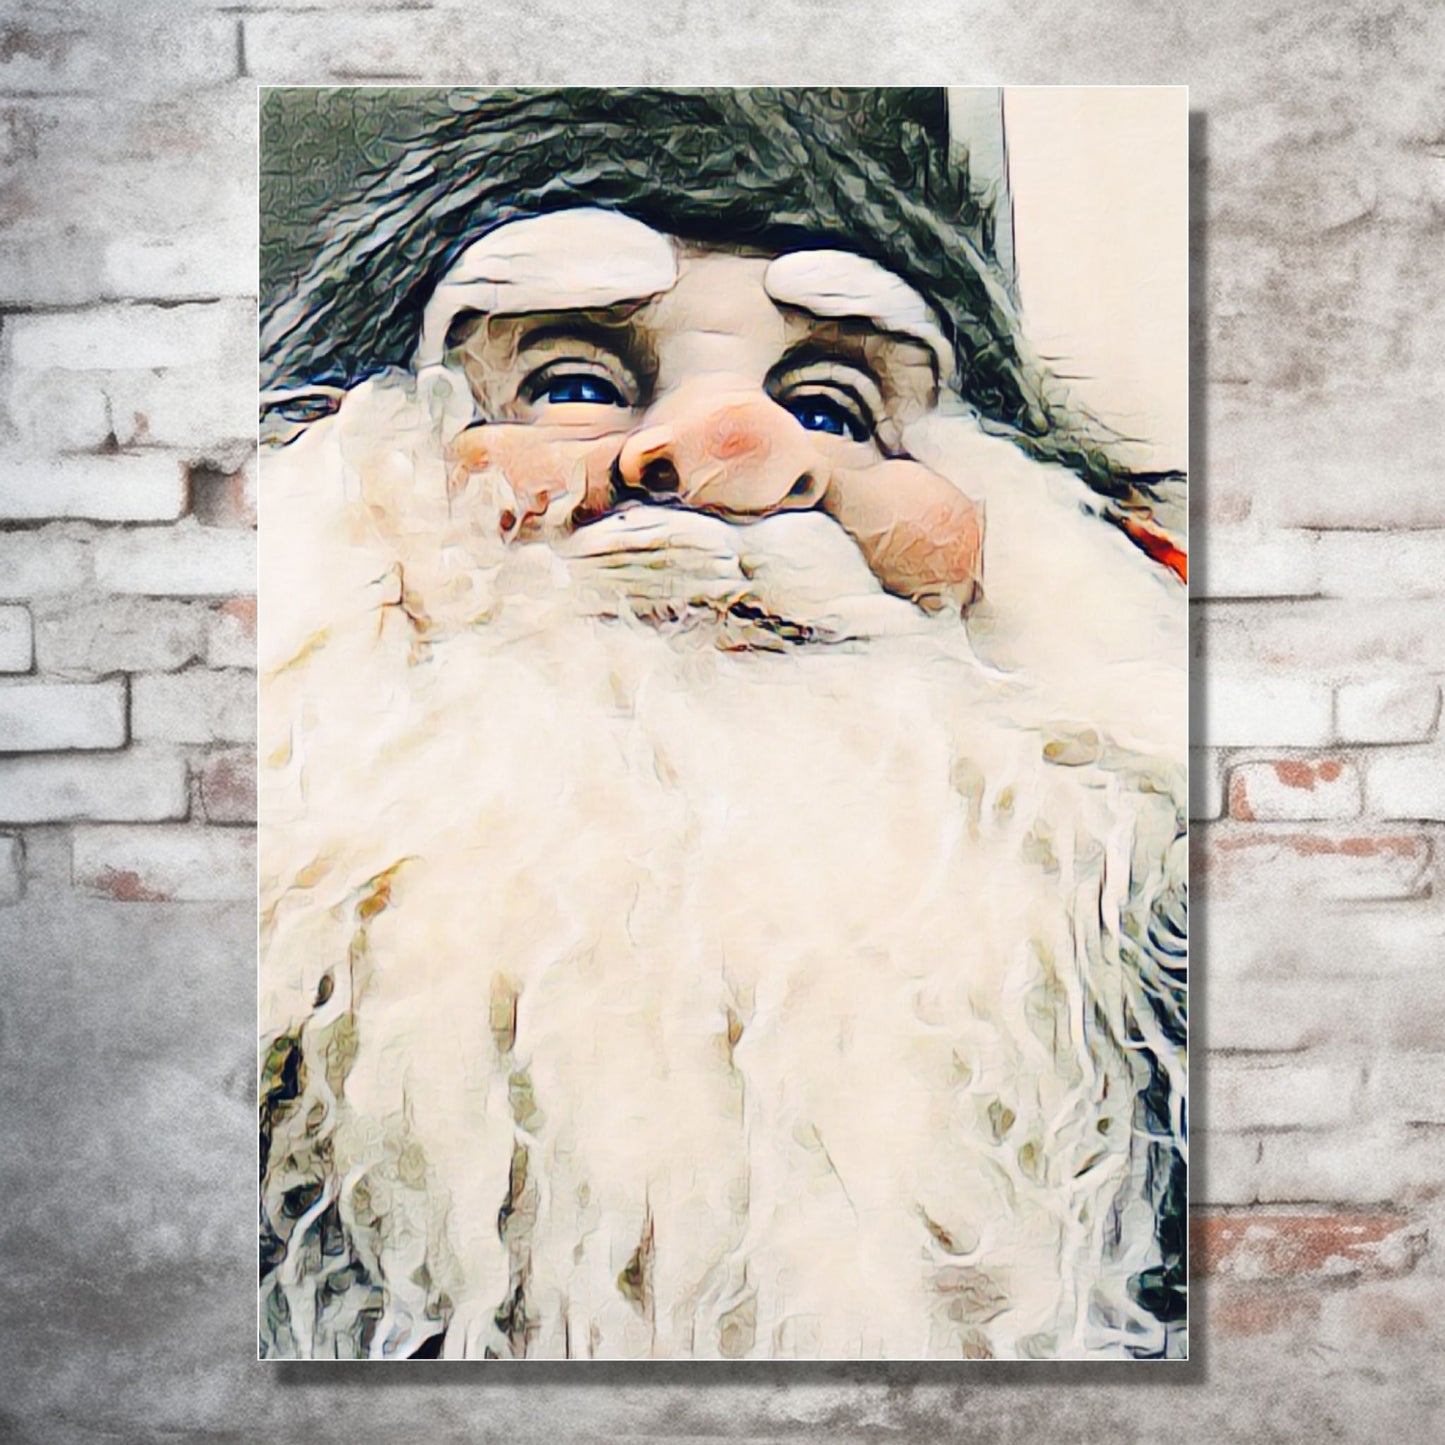 Grafisk motiv av ansiktet til en julenisse med stort, hvitt skjegg. På bildet henger nissemotivet som lerretsbilde på en murvegg. Under bildet står det en grønn kommode, og ved siden av et juletre og julepakker.